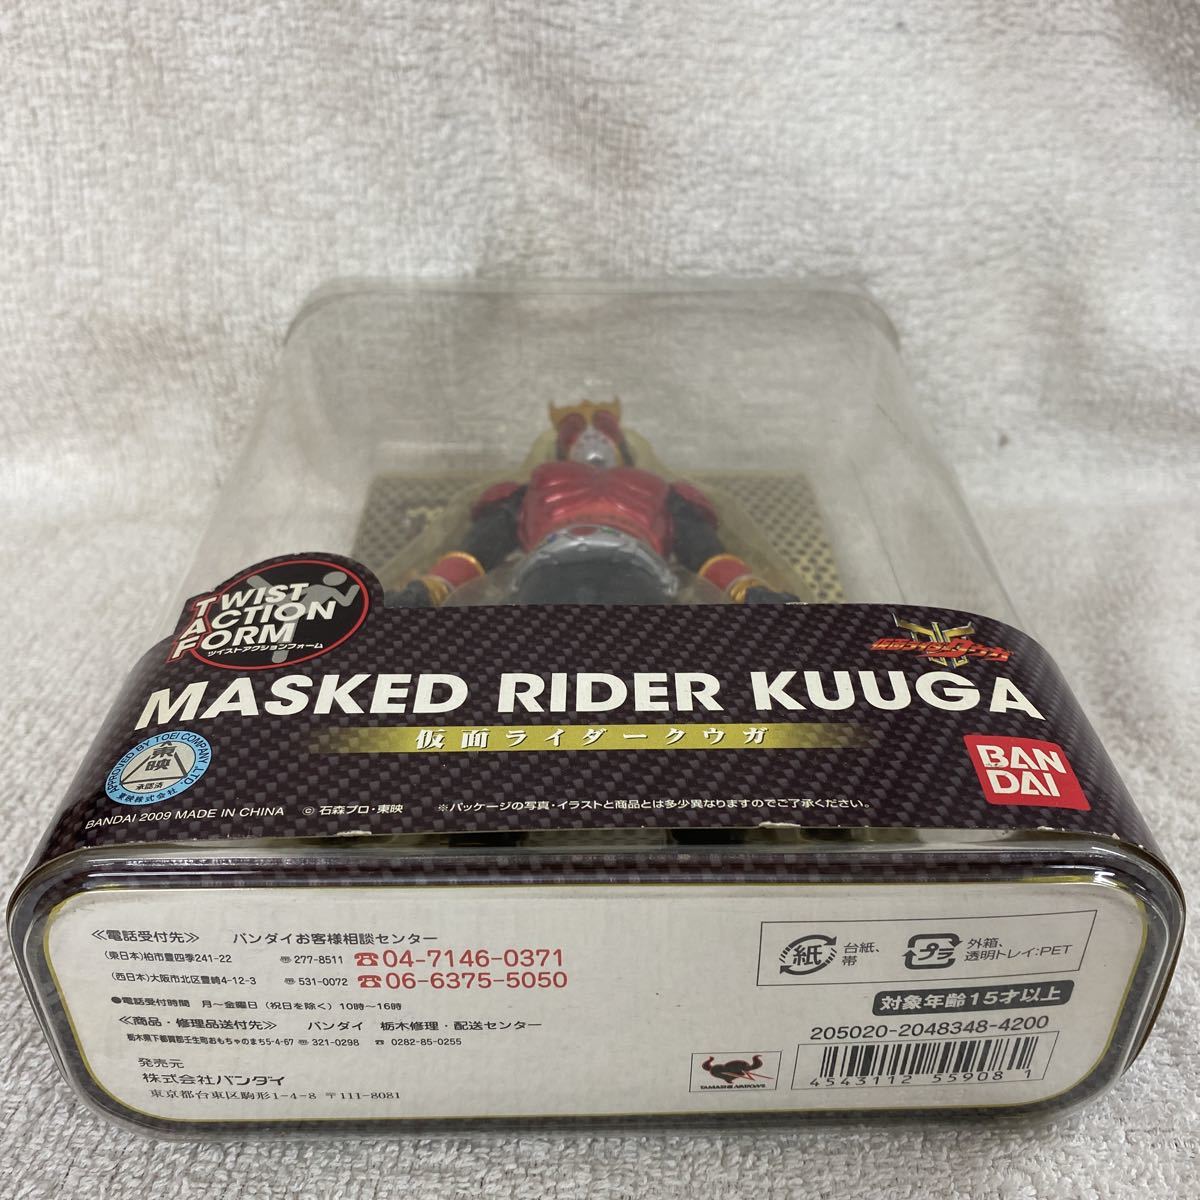 TWIST ACTION FORM кручение action пена Kamen Rider Kuuga новый товар нераспечатанный товар 